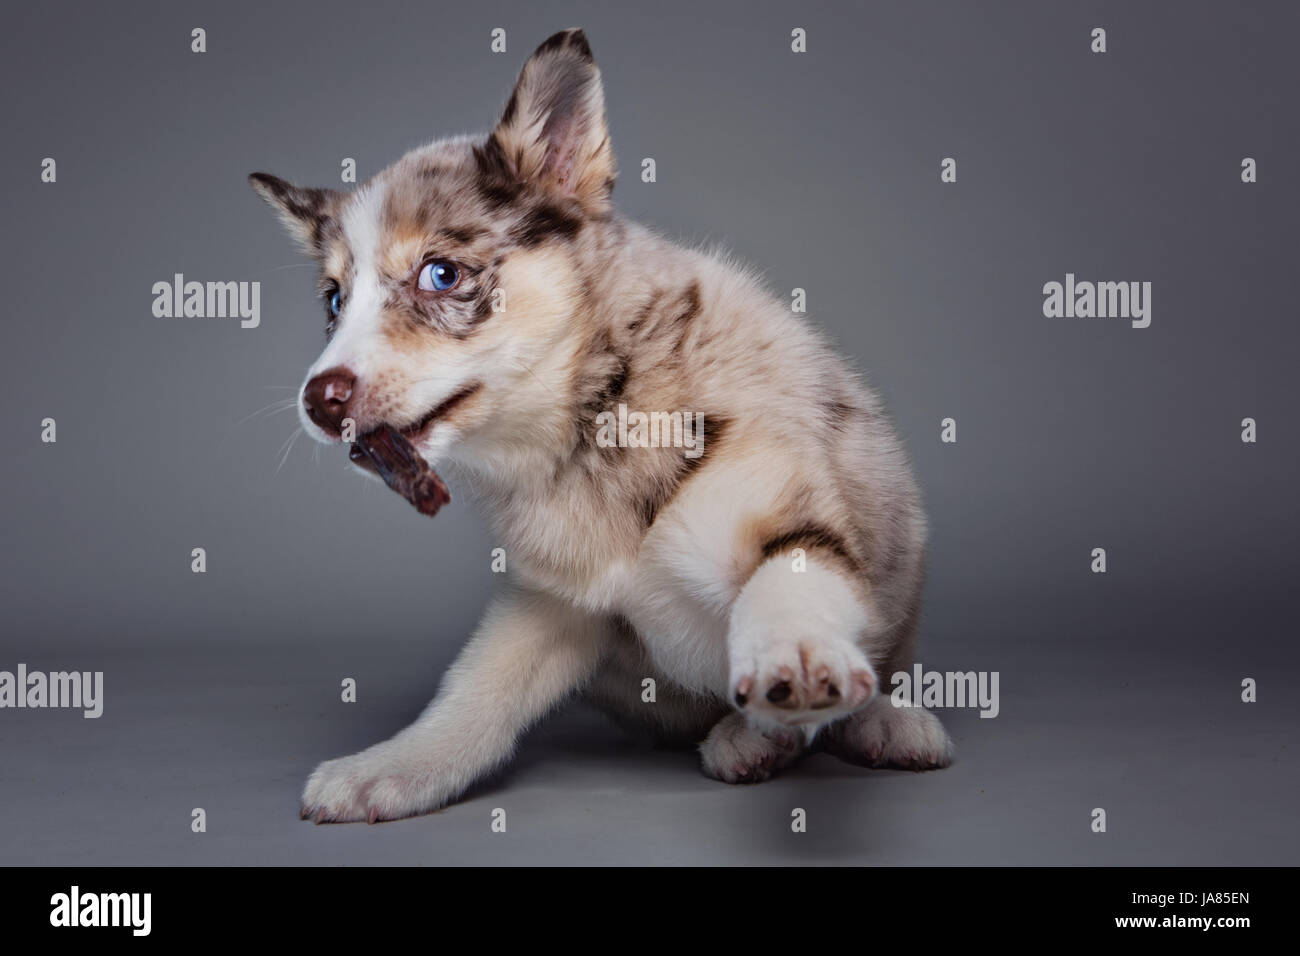 Retrato de estudio de un cachorro Pomsky mirando alegremente a la cámara con un regalo en su boca. Foto de stock